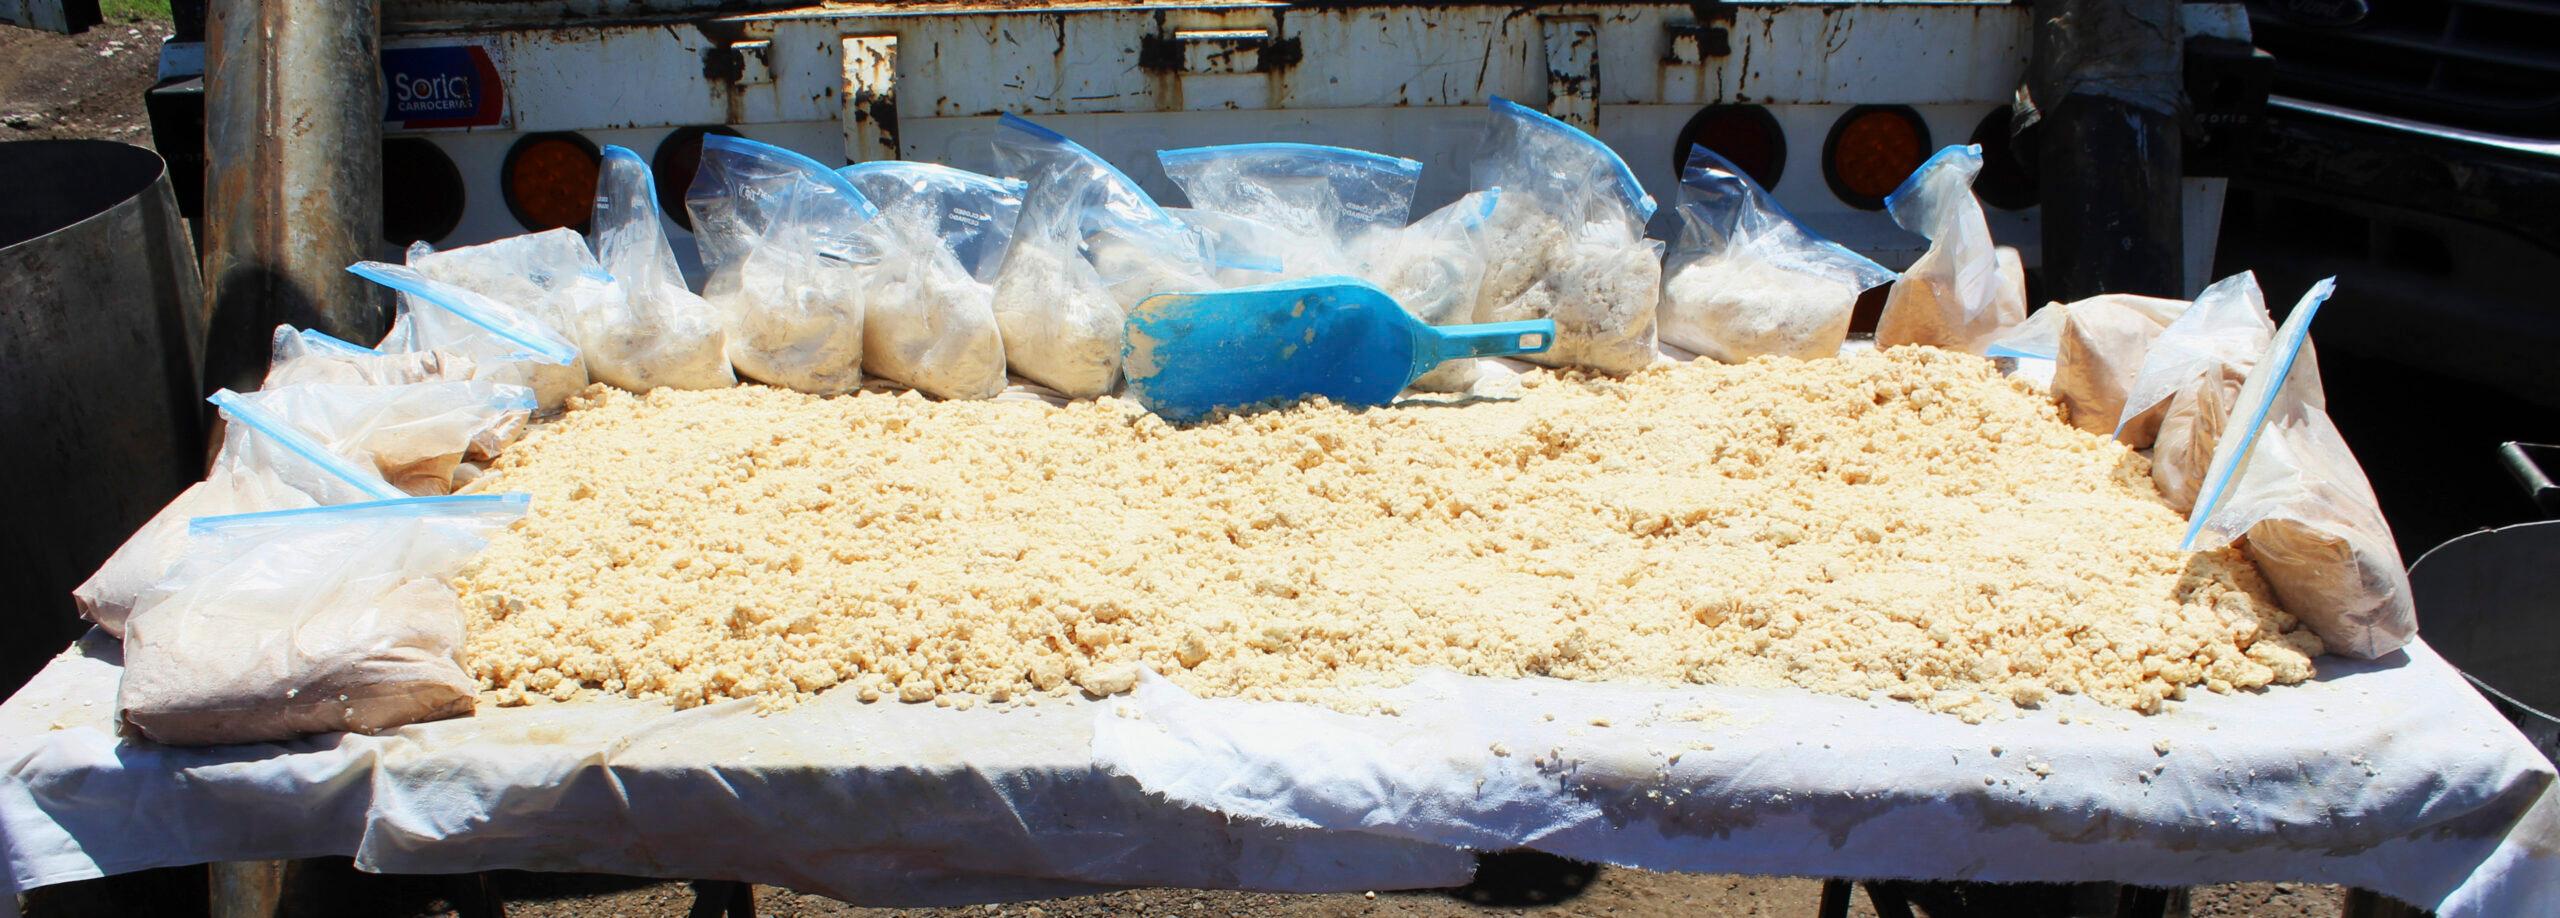 Cuatro mexicanos son arrestados en Nigeria por construir un “superlaboratorio” de metanfetaminas